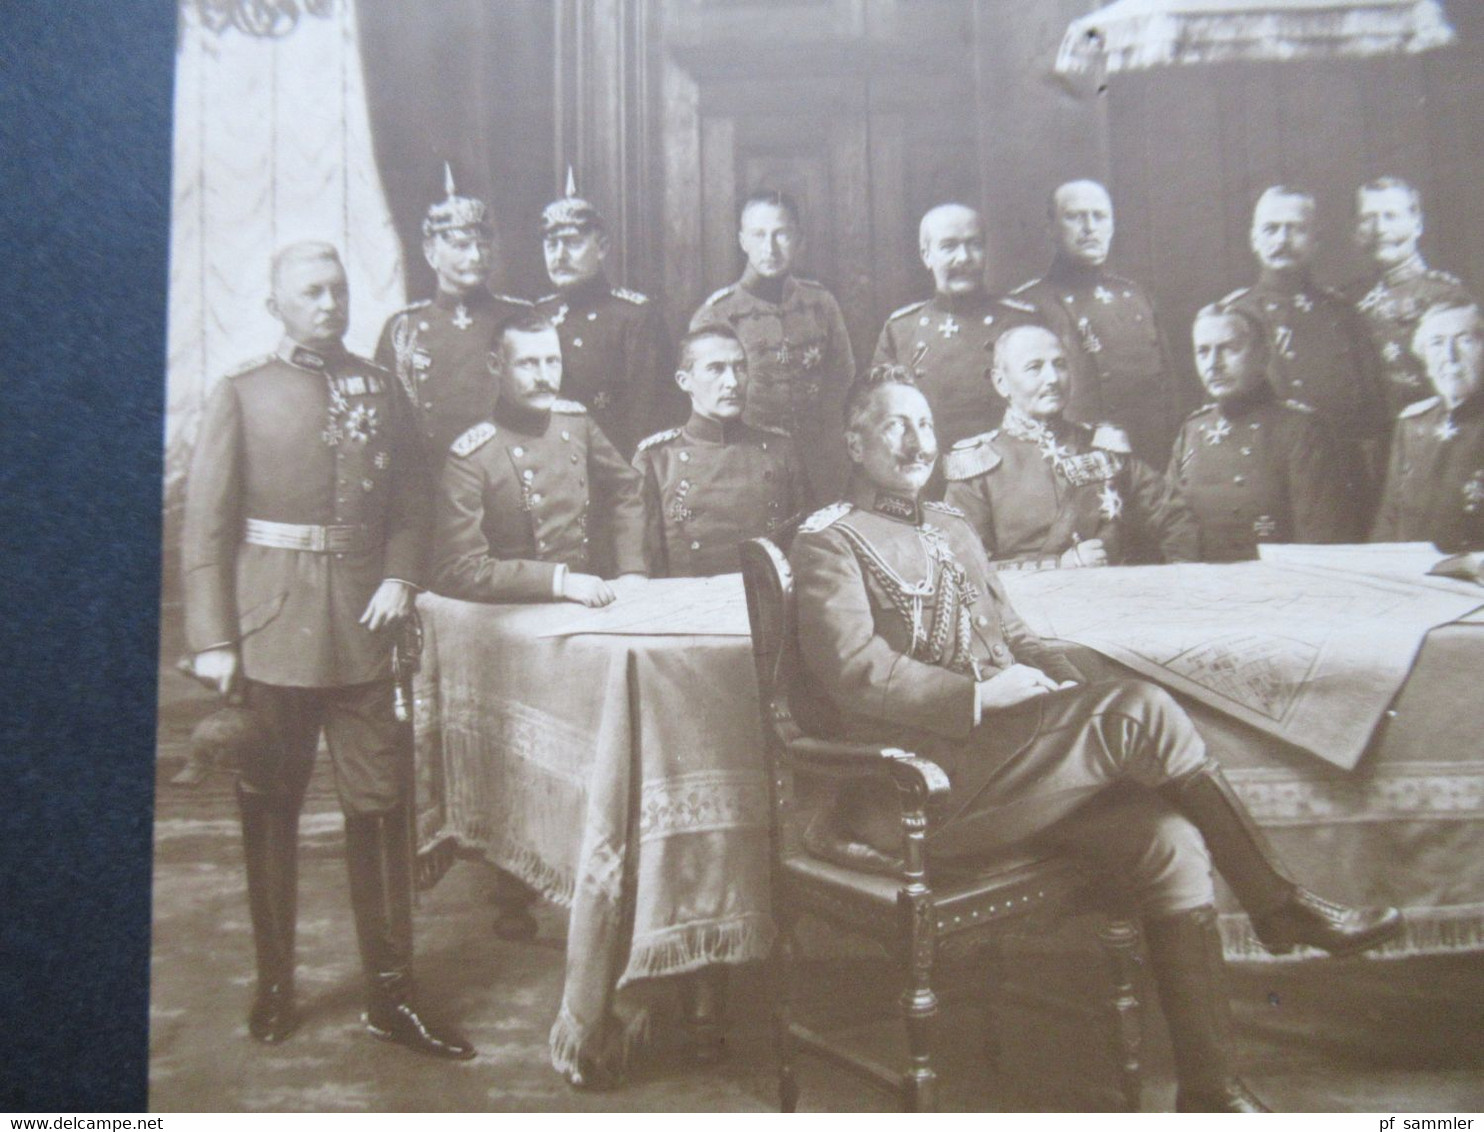 Foto AK Aus Großer Zeit Mit Kaiser Wilhelm II. Und Seine Heerführer Mit Hindenburg Usw. - Königshäuser